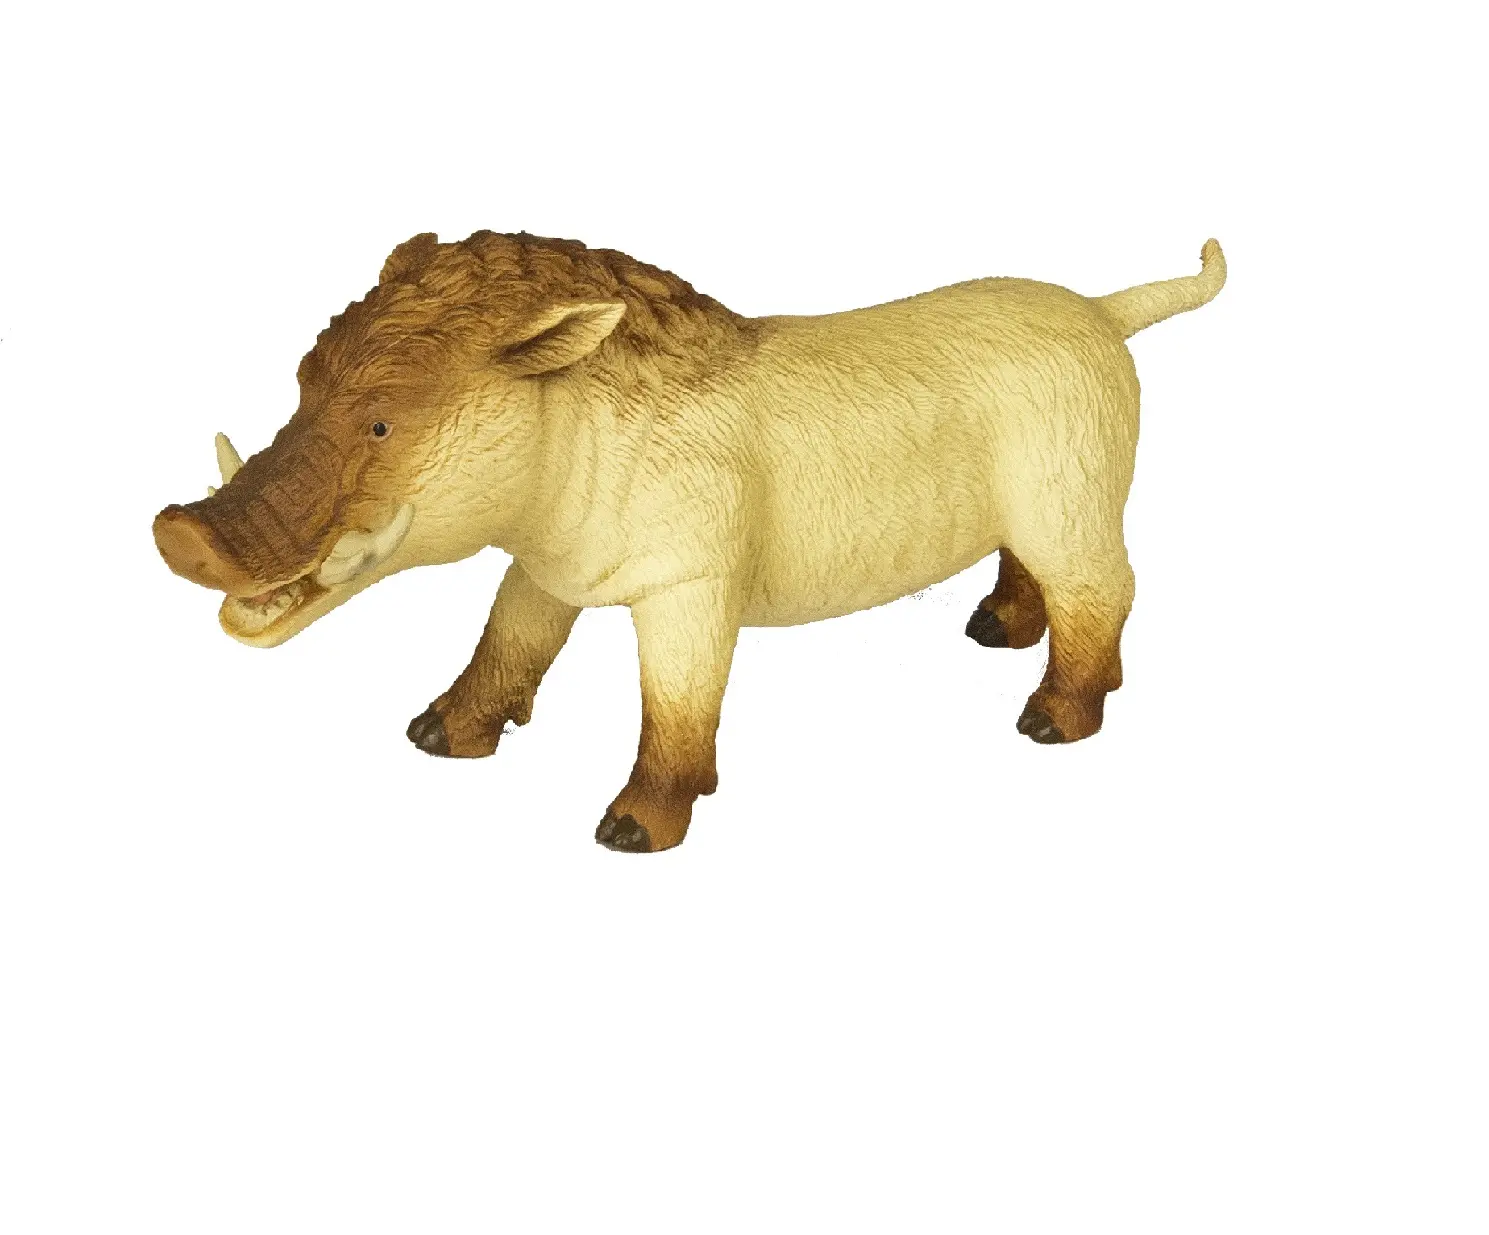 Metridiochoerus-juguetes de animales para niños, juguete de animales prehistoricos, 2021